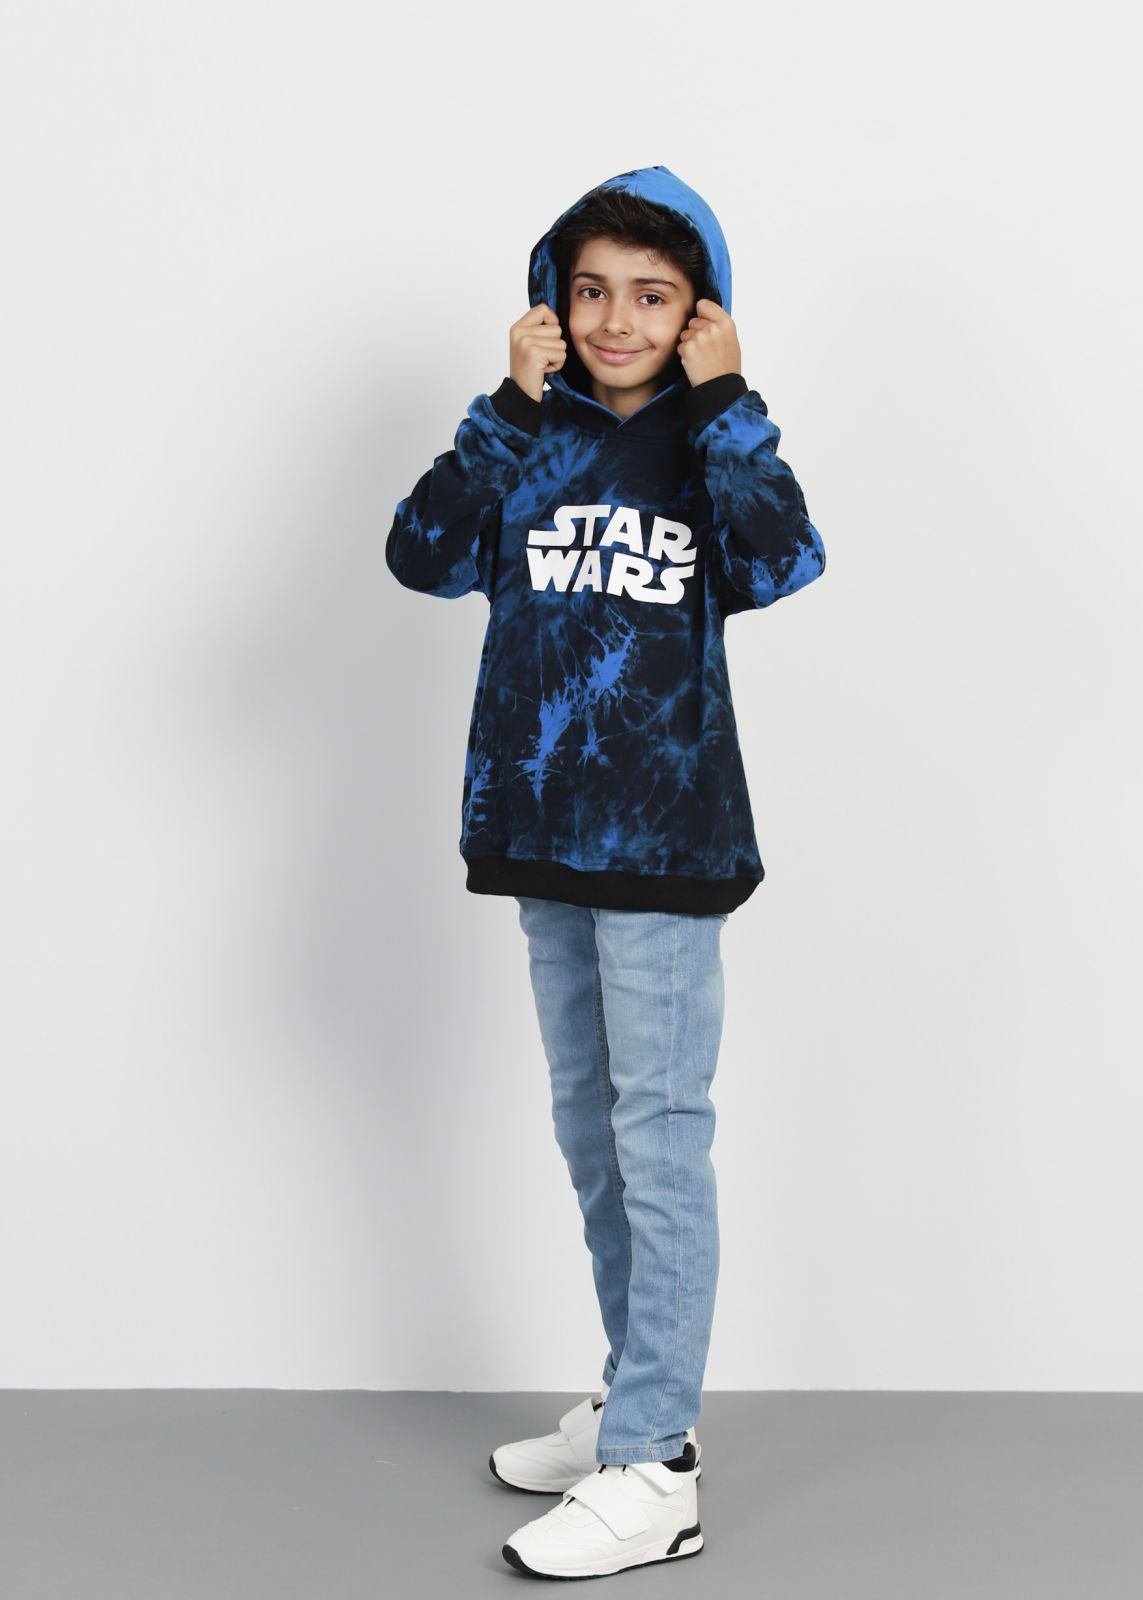 Printed Wars” Kids Tie-Dye Boy “Star Hoodie